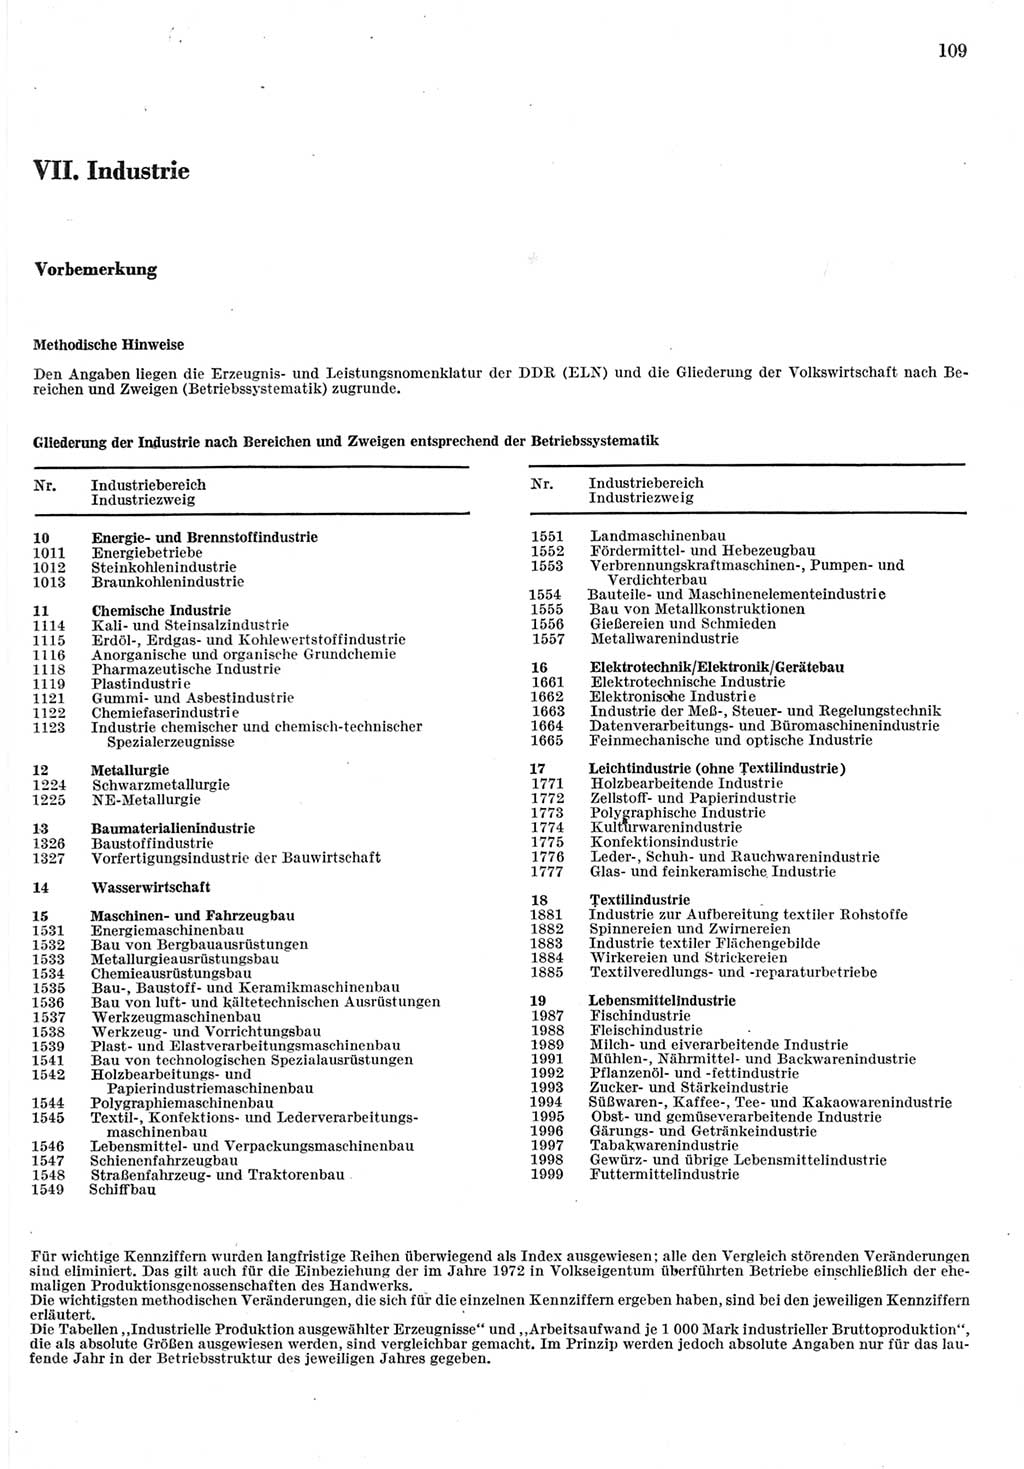 Statistisches Jahrbuch der Deutschen Demokratischen Republik (DDR) 1977, Seite 109 (Stat. Jb. DDR 1977, S. 109)